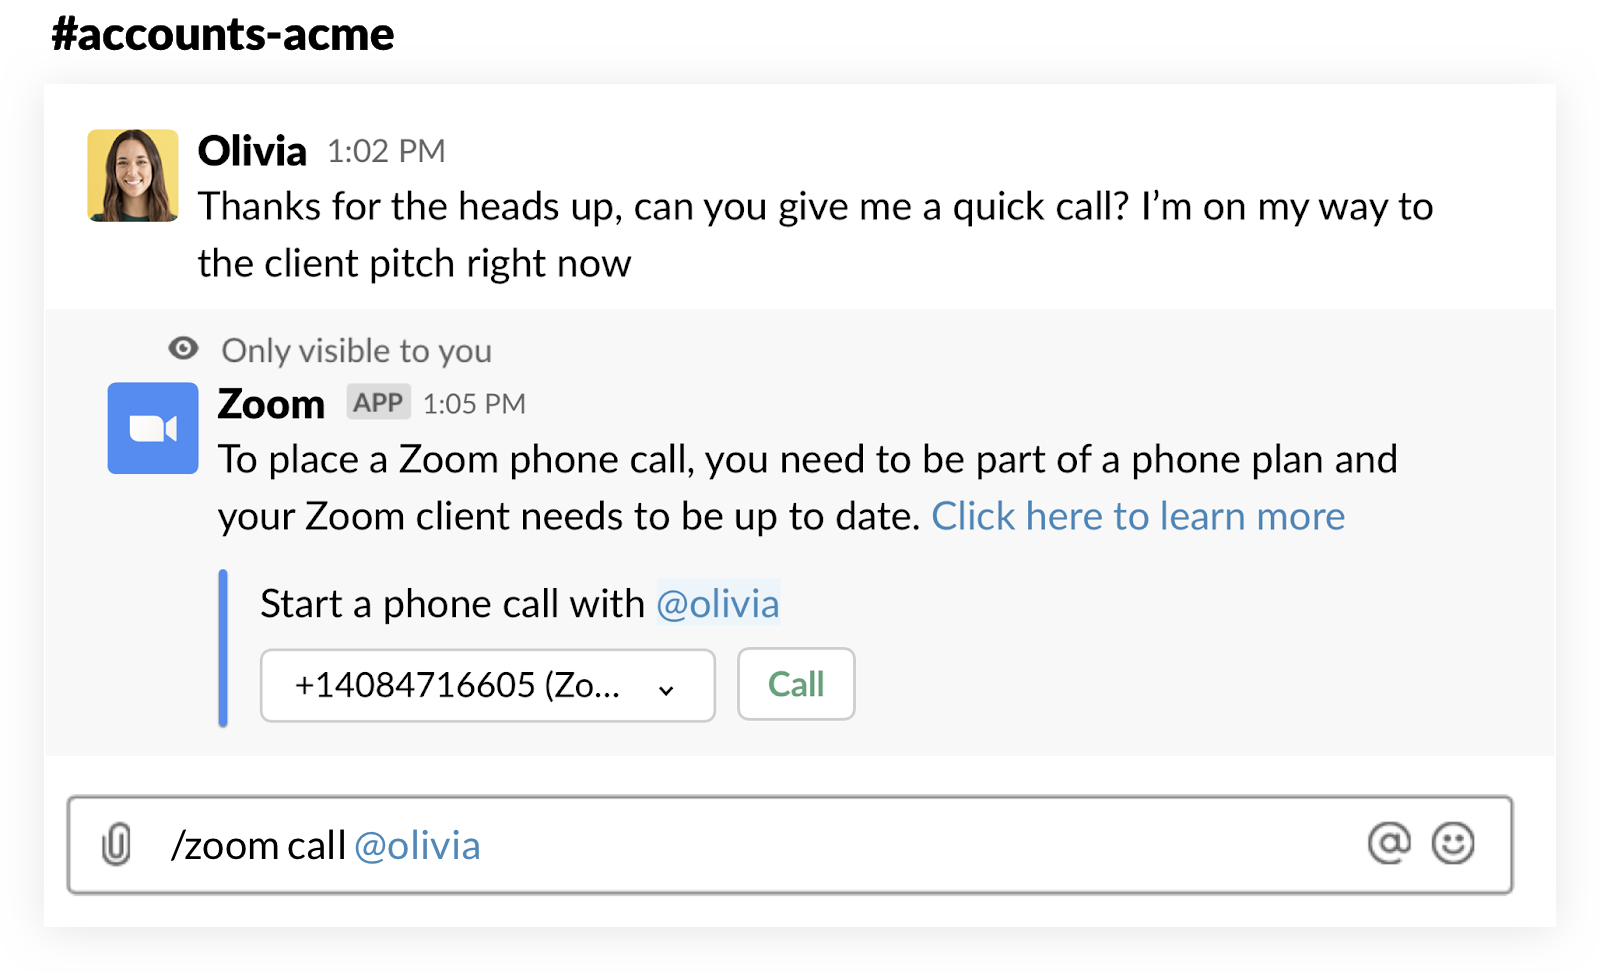 Mensagem em um canal do Slack acima da solicitação de fazer uma chamada no Zoom para o telefone de um membro do workspace pelo Slack